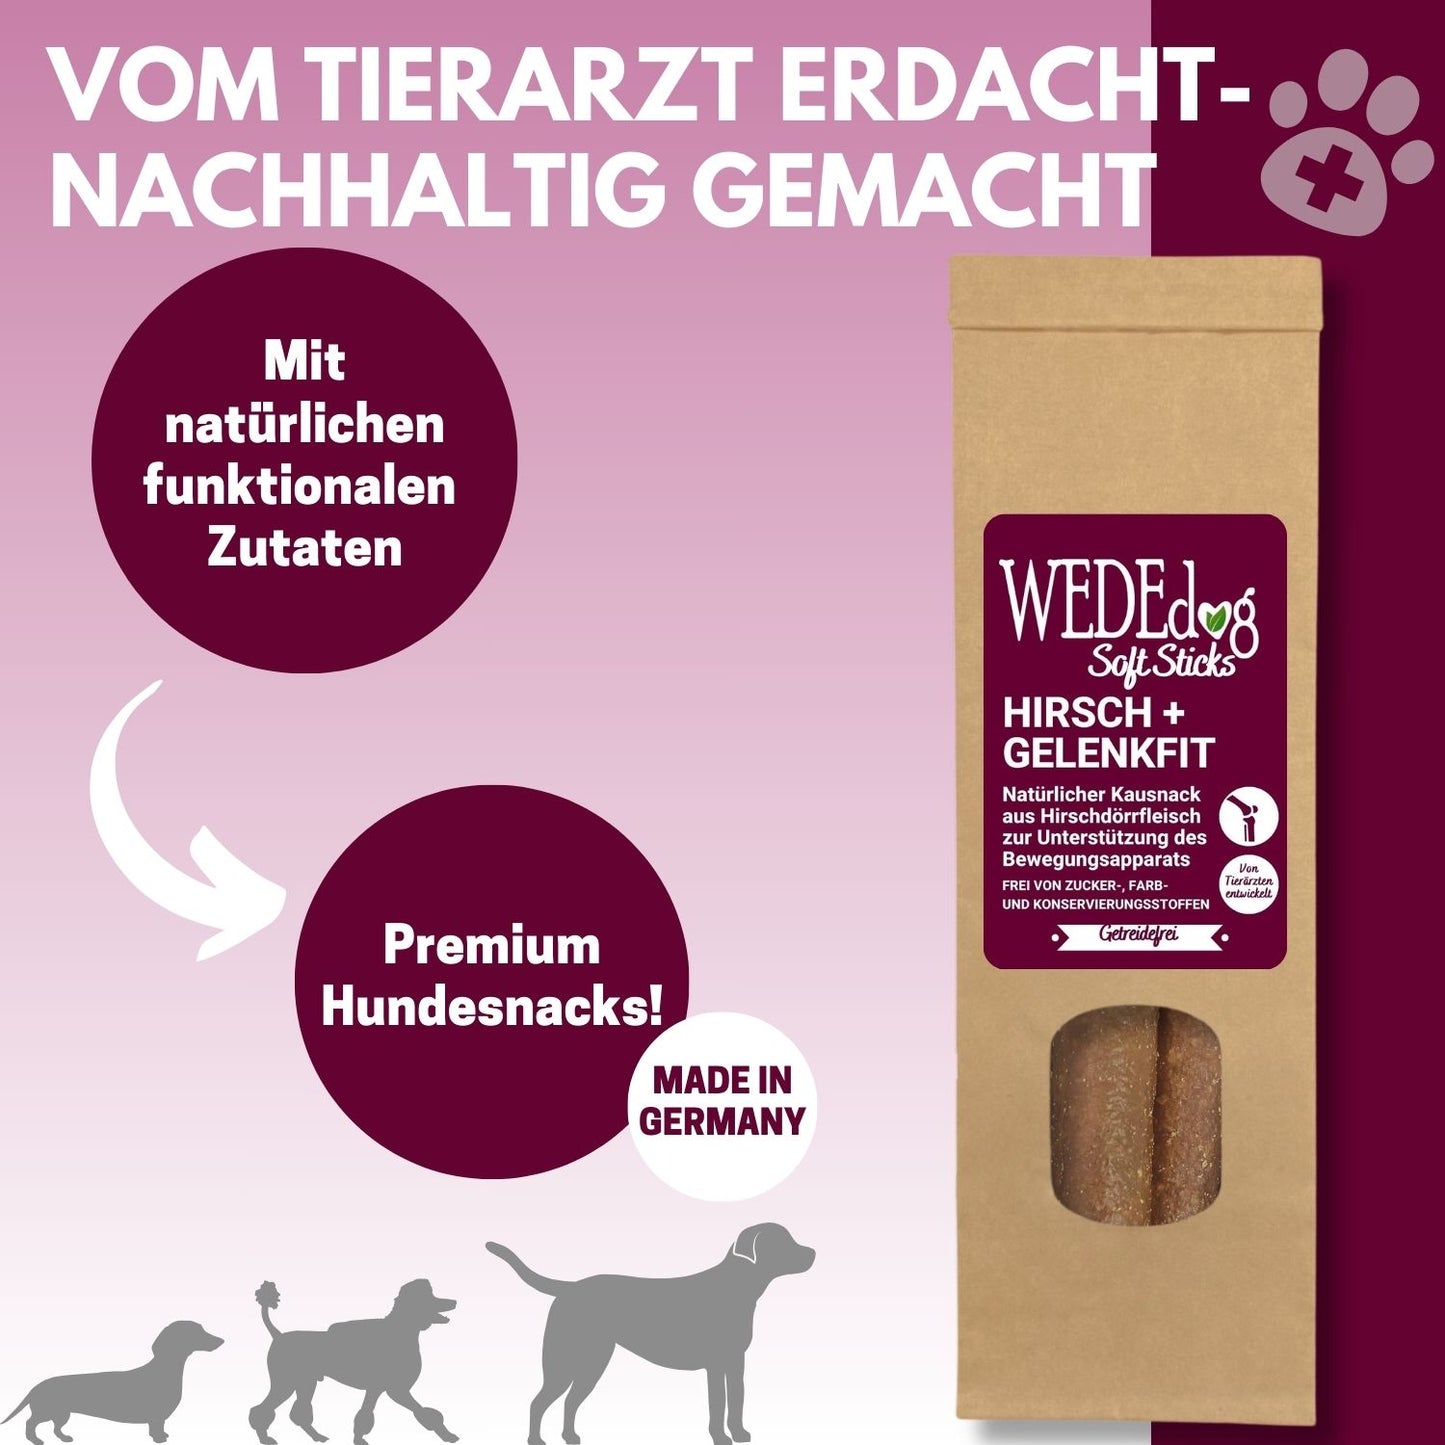 Natürliche Kausnacks für Hunde I Hundegelenke stärken I WEDEdog SOFT Sticks Hirsch + Gelenkfit I Premium Kausticks für Hunde I 110g